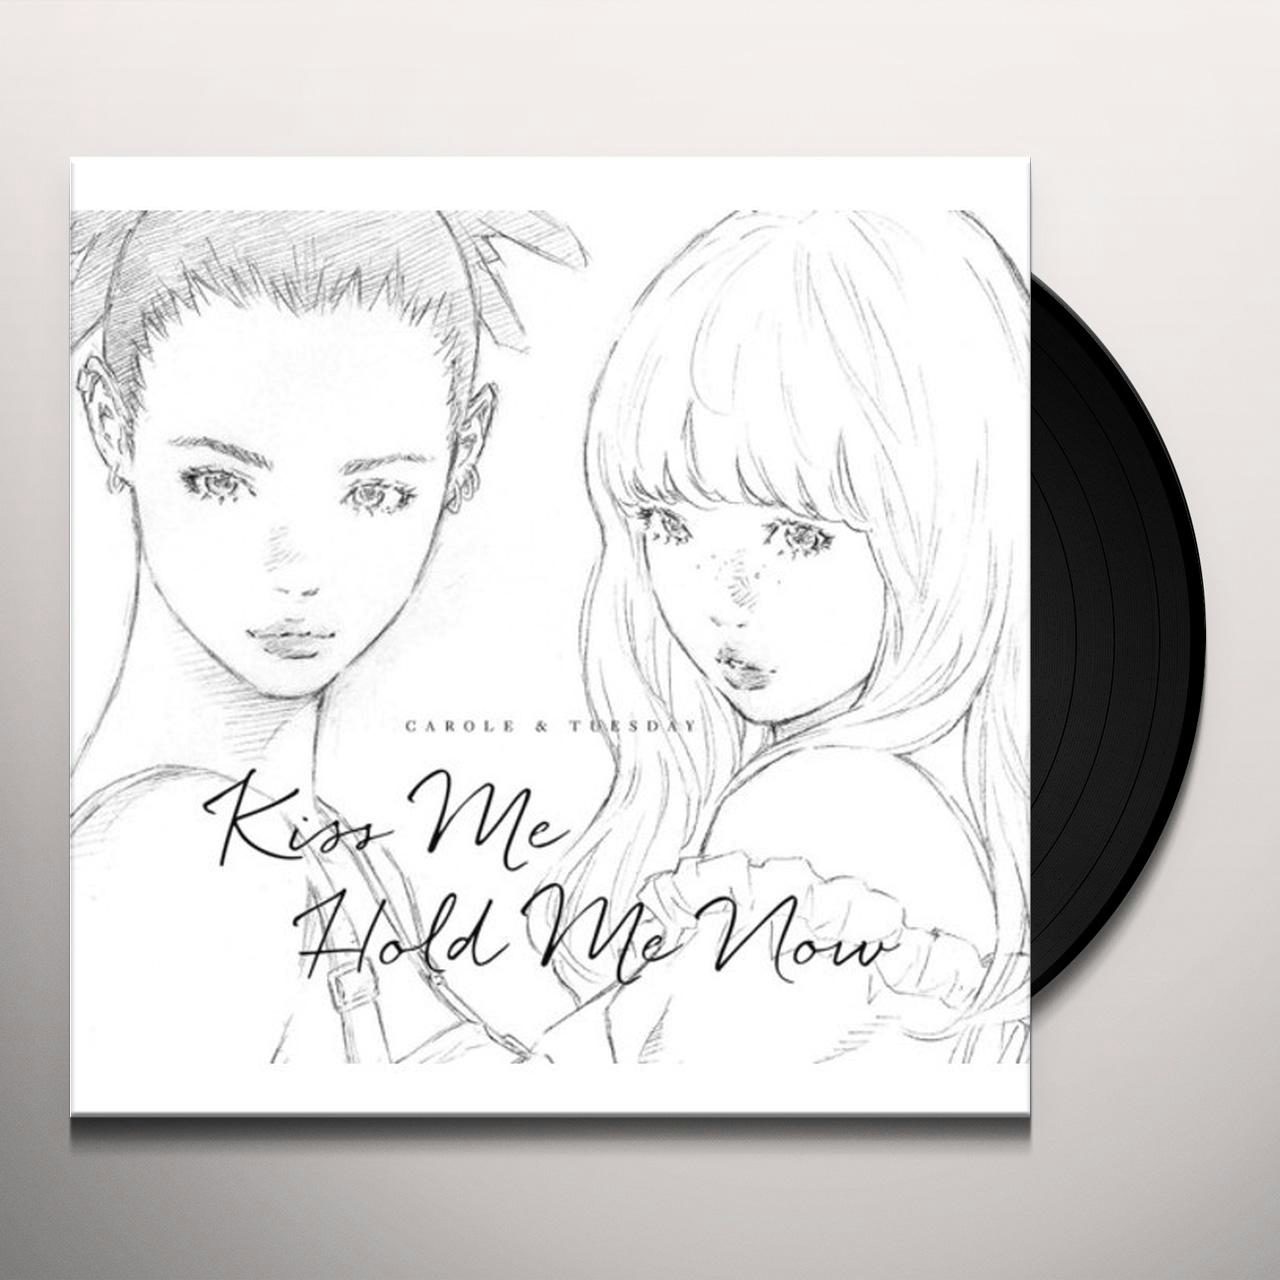 アナログ盤】キャロル&チューズデイ Kiss Me/Hold Me Now - レコード